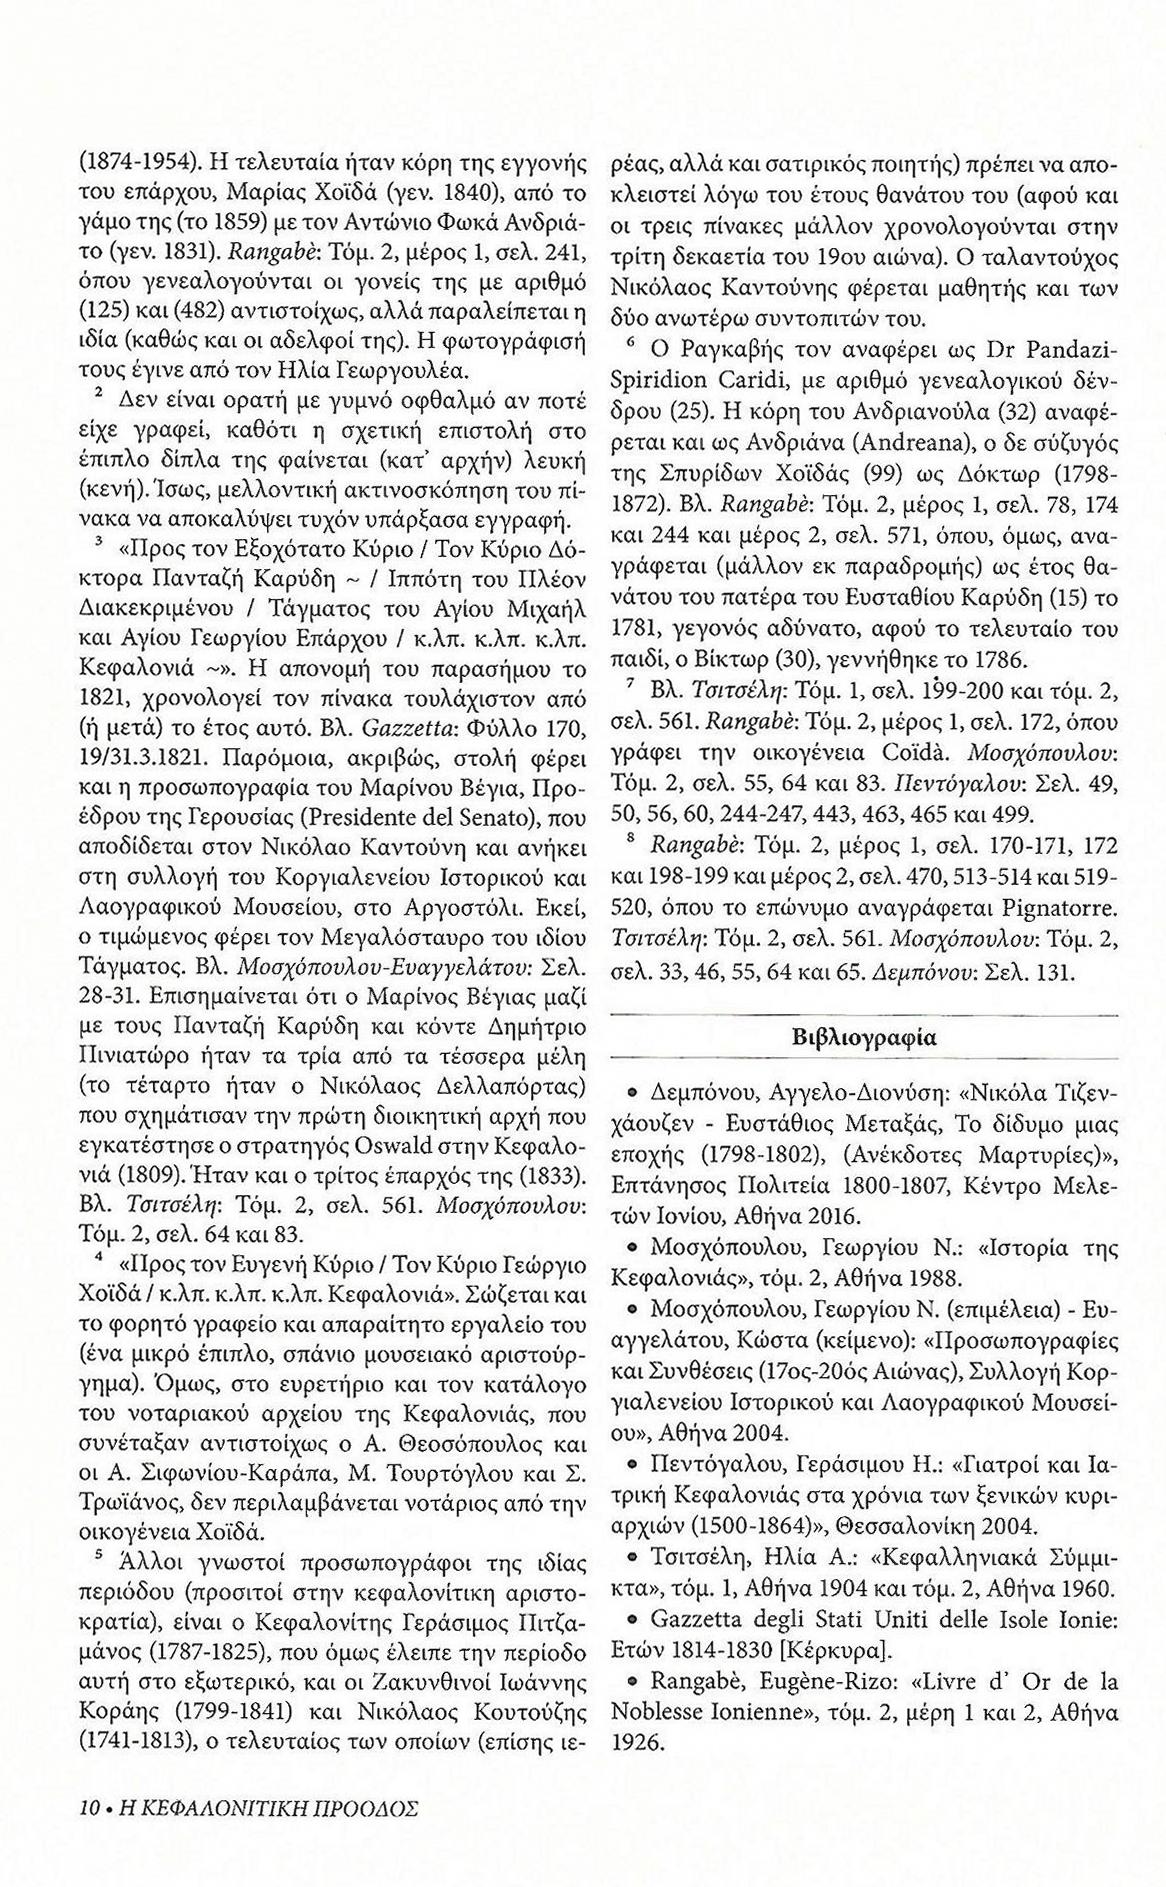 Τρεις ιστορικές προσωπογραφίες, Κεφαλονίτικη Πρόοδος, Β-27, σελ. 10